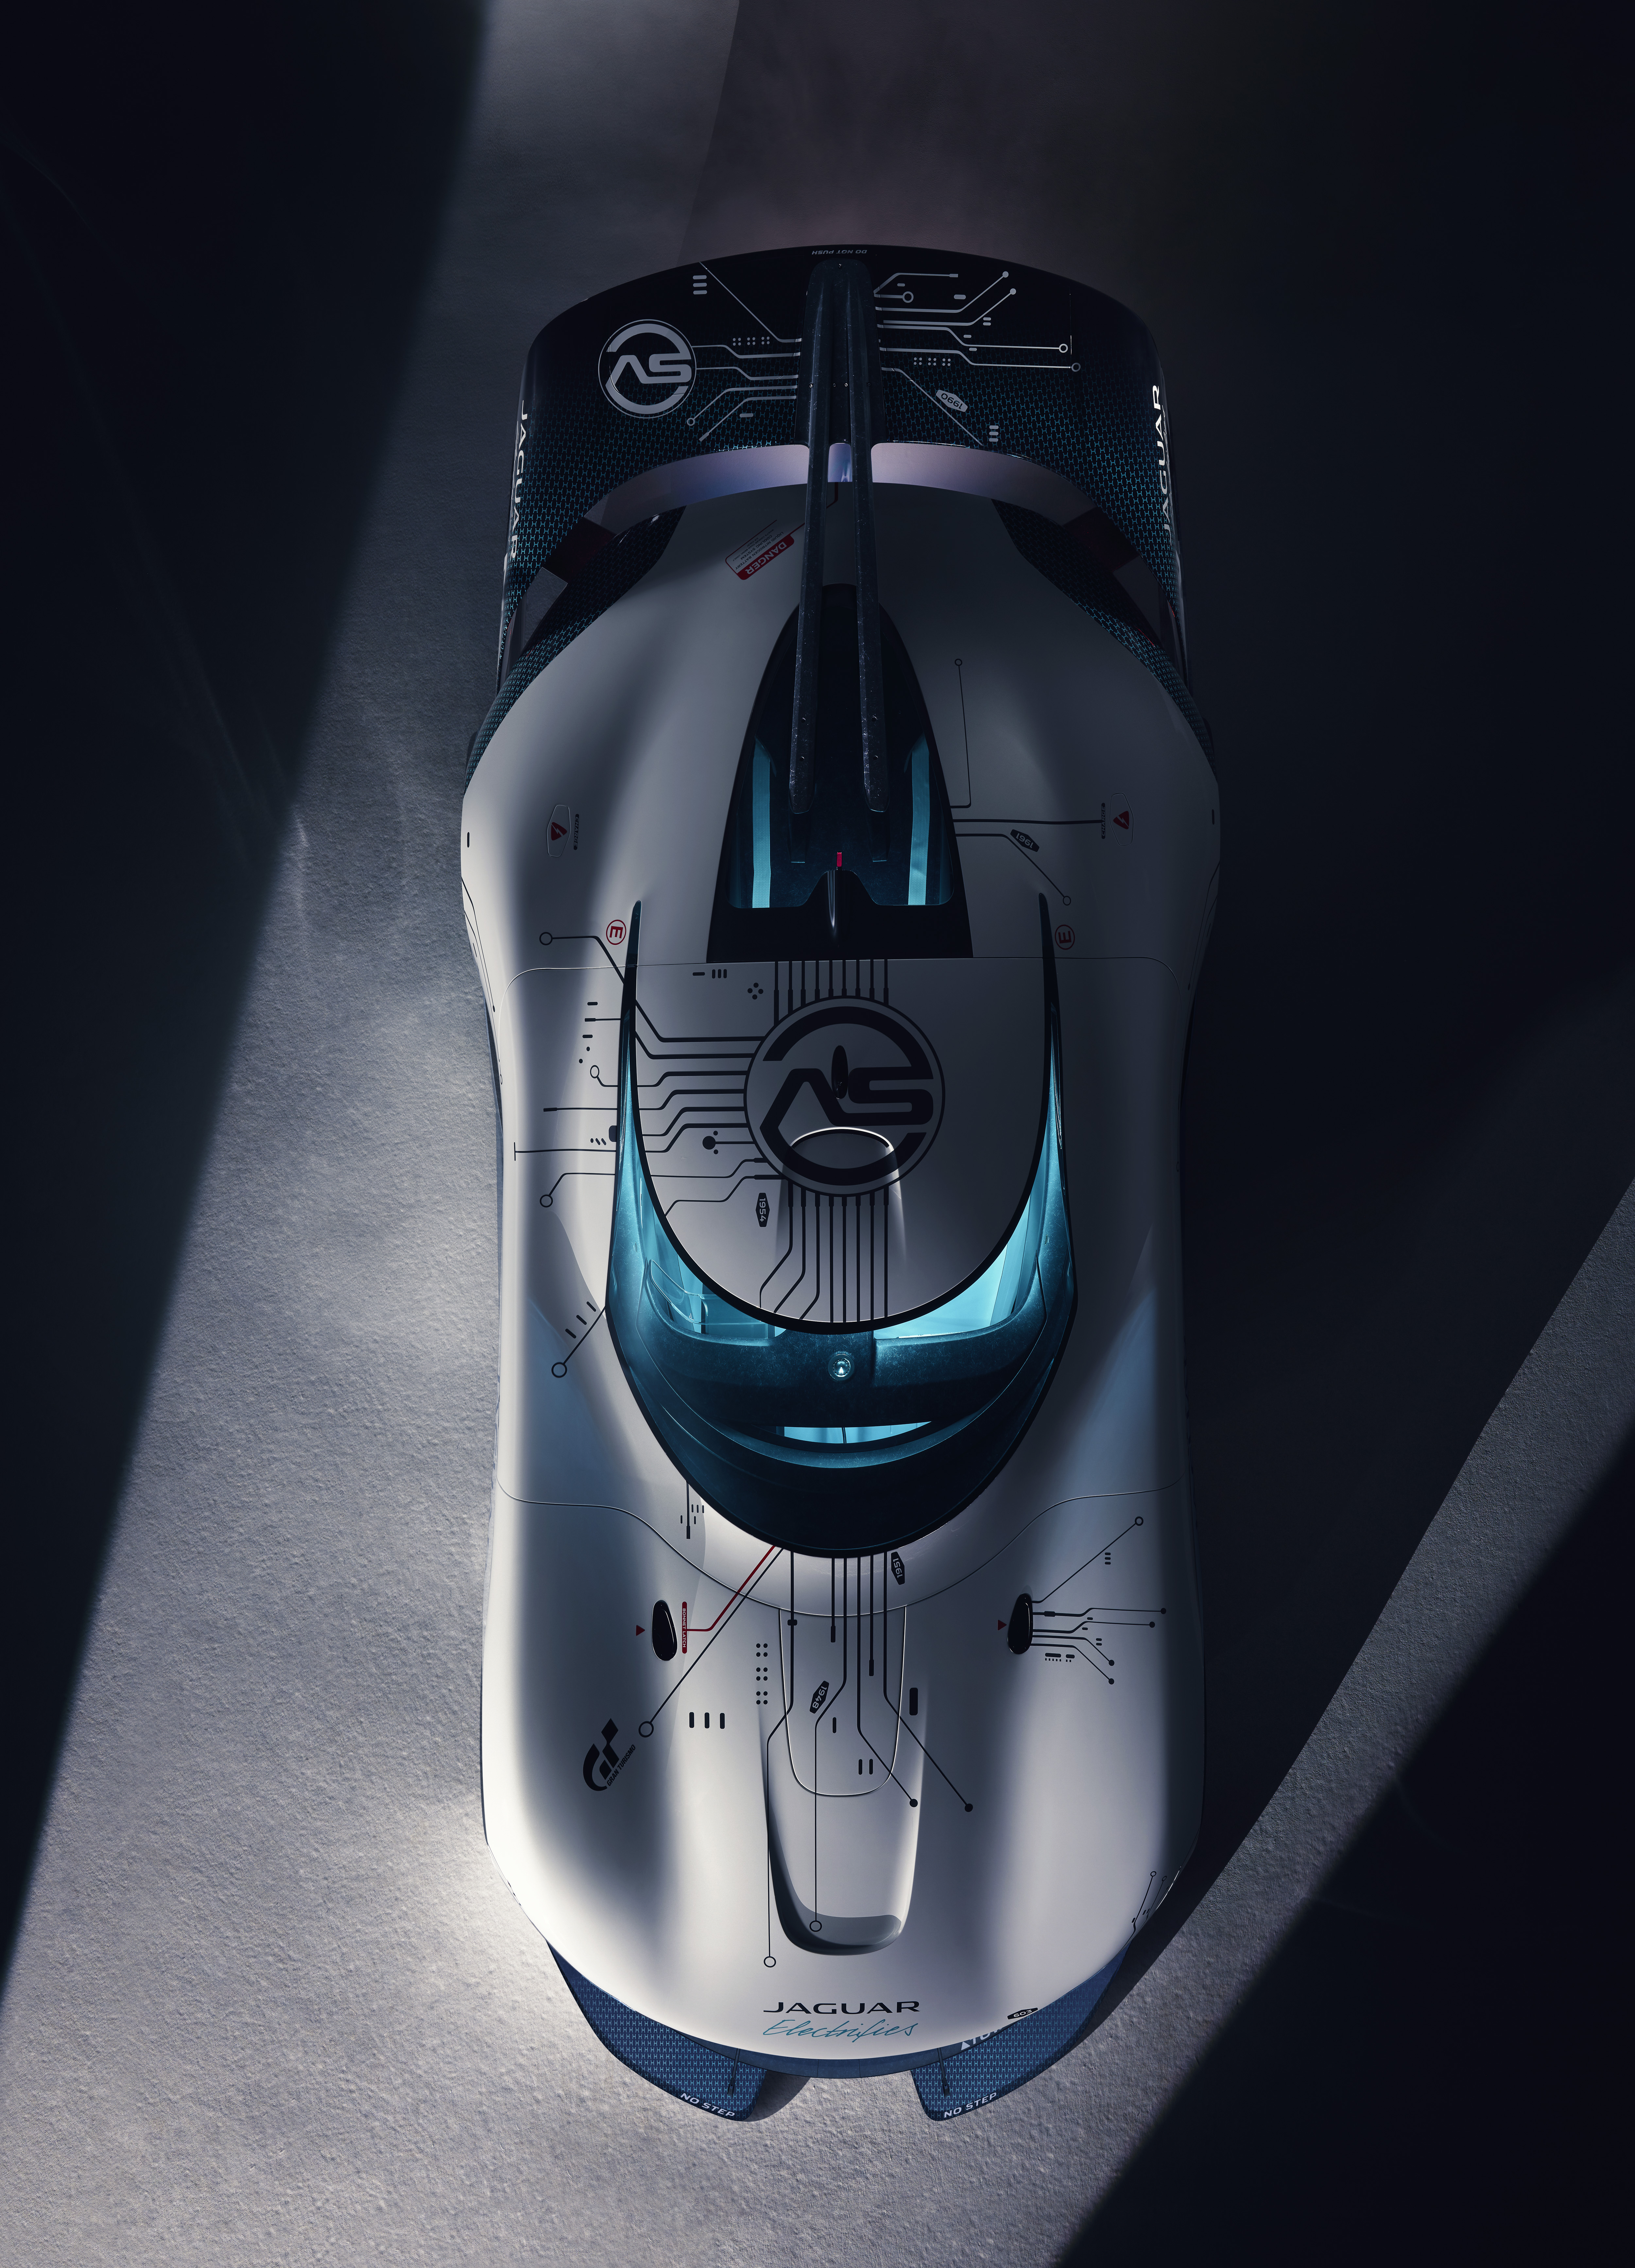 Jaguar Vision Gran Turismo Sv Wallpapers